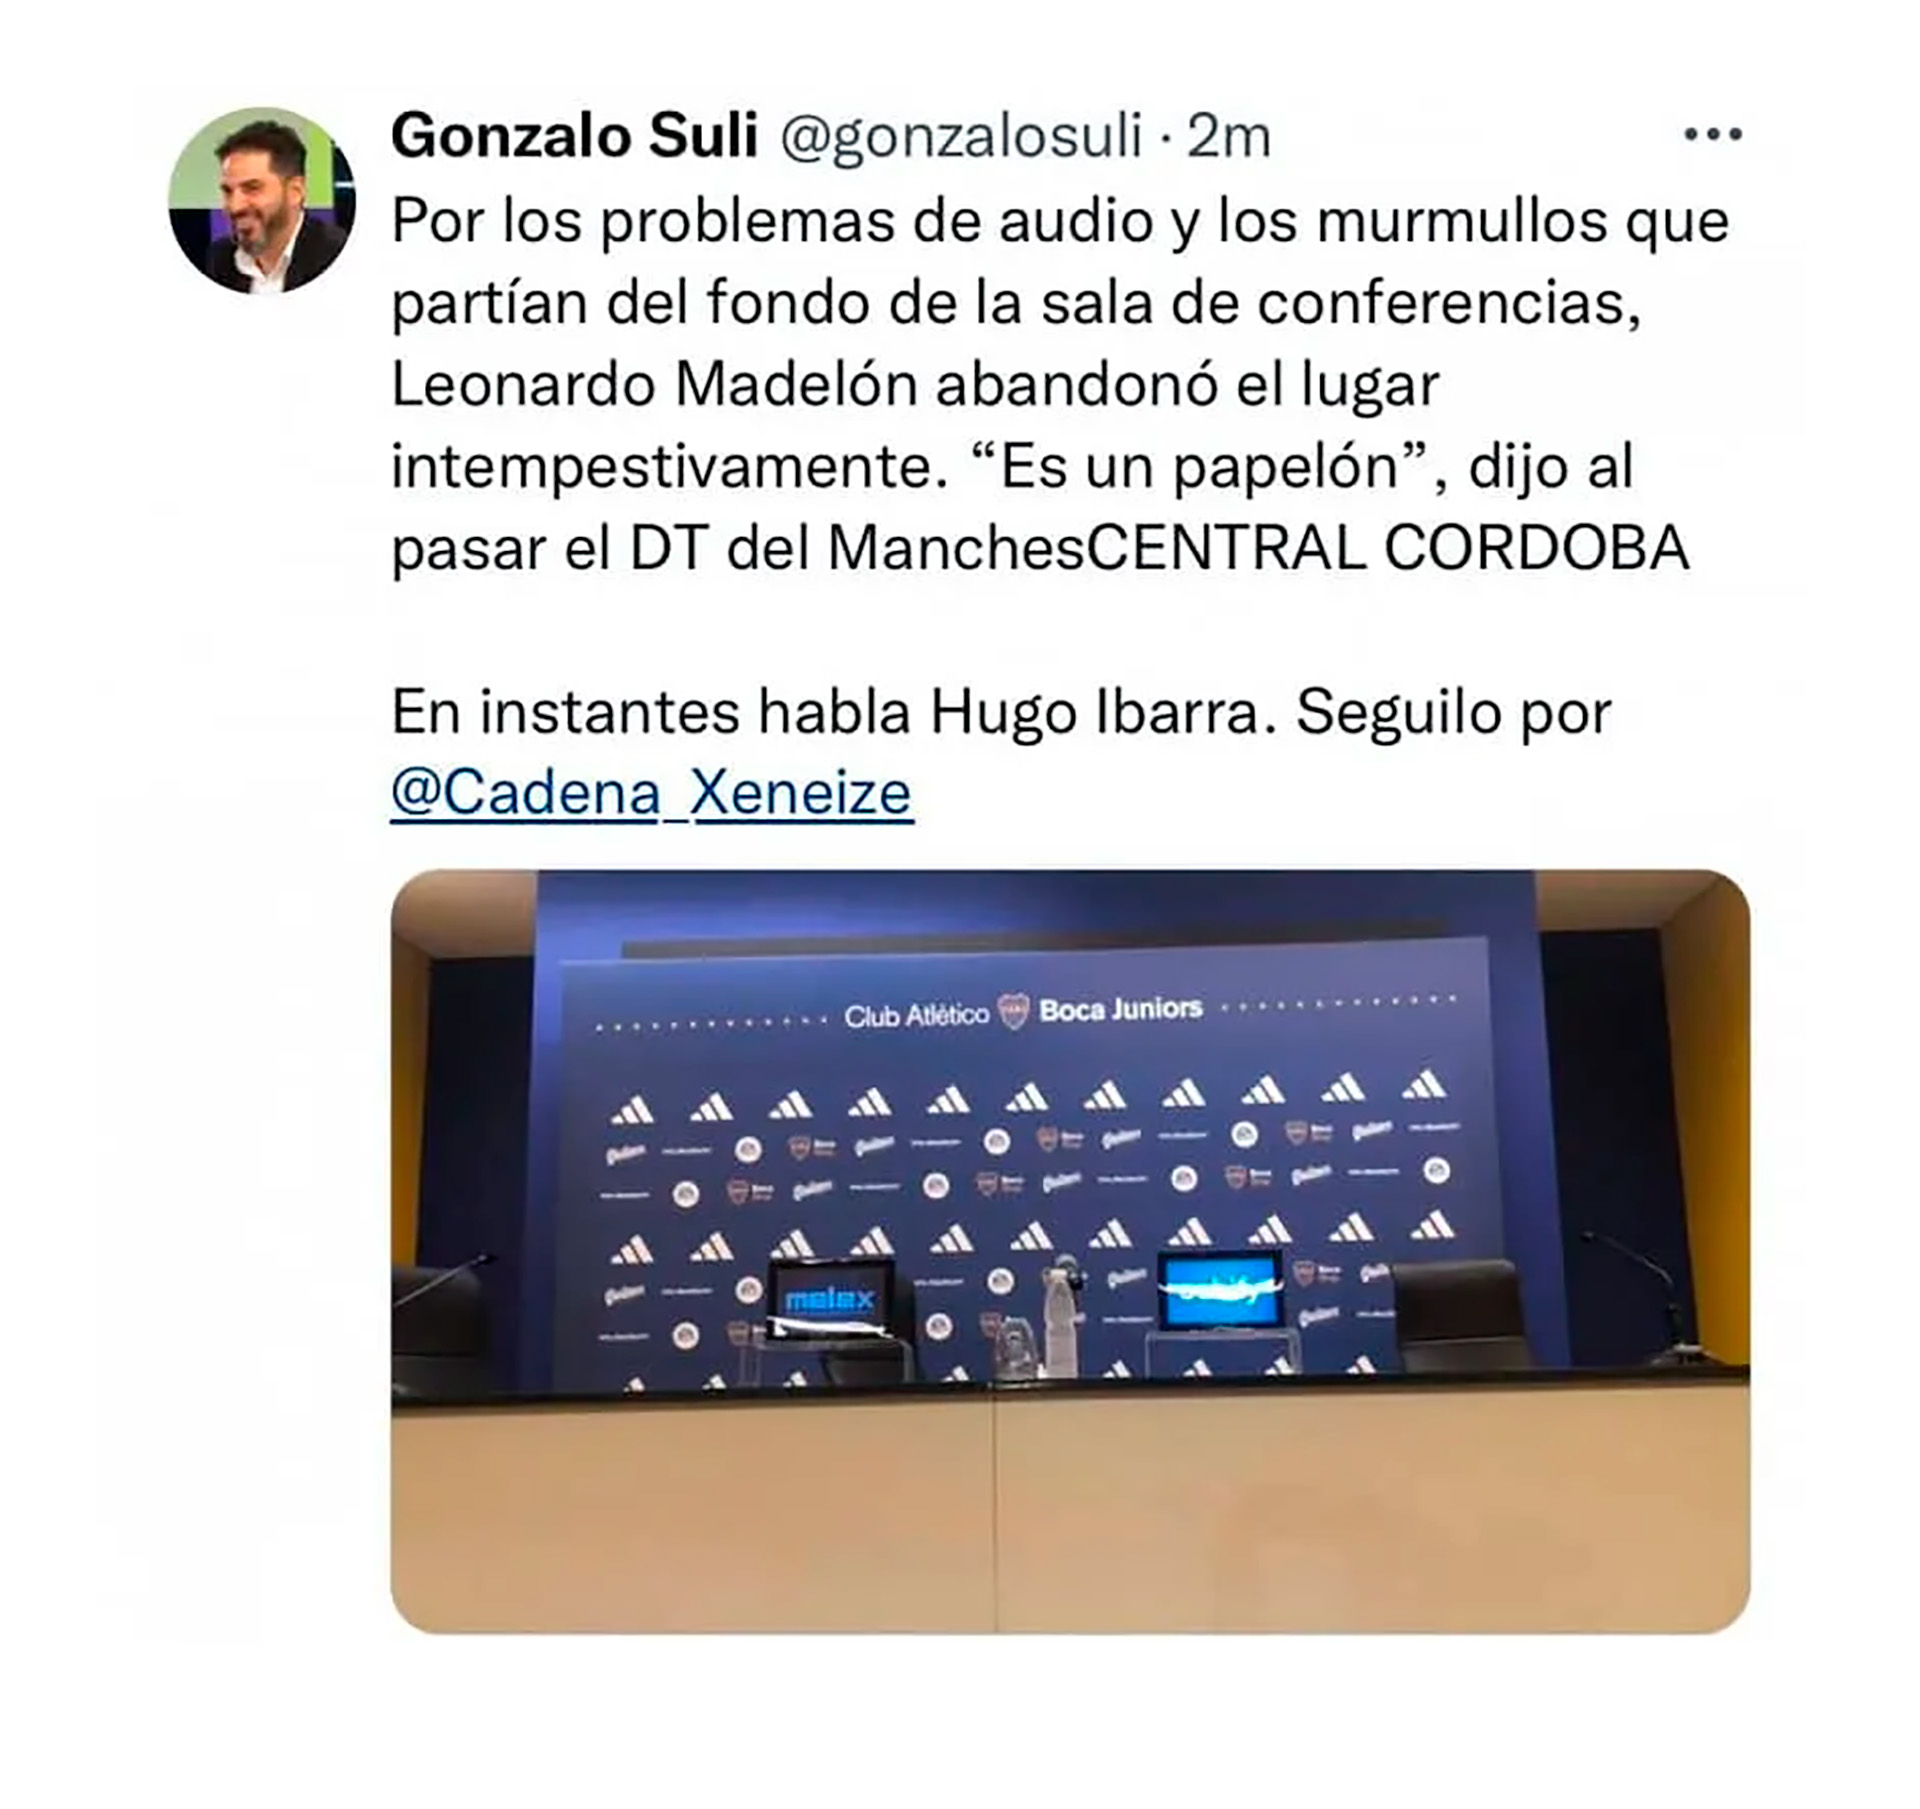 El tweet que generó la polémica en la conferencia de prensa de Madelón